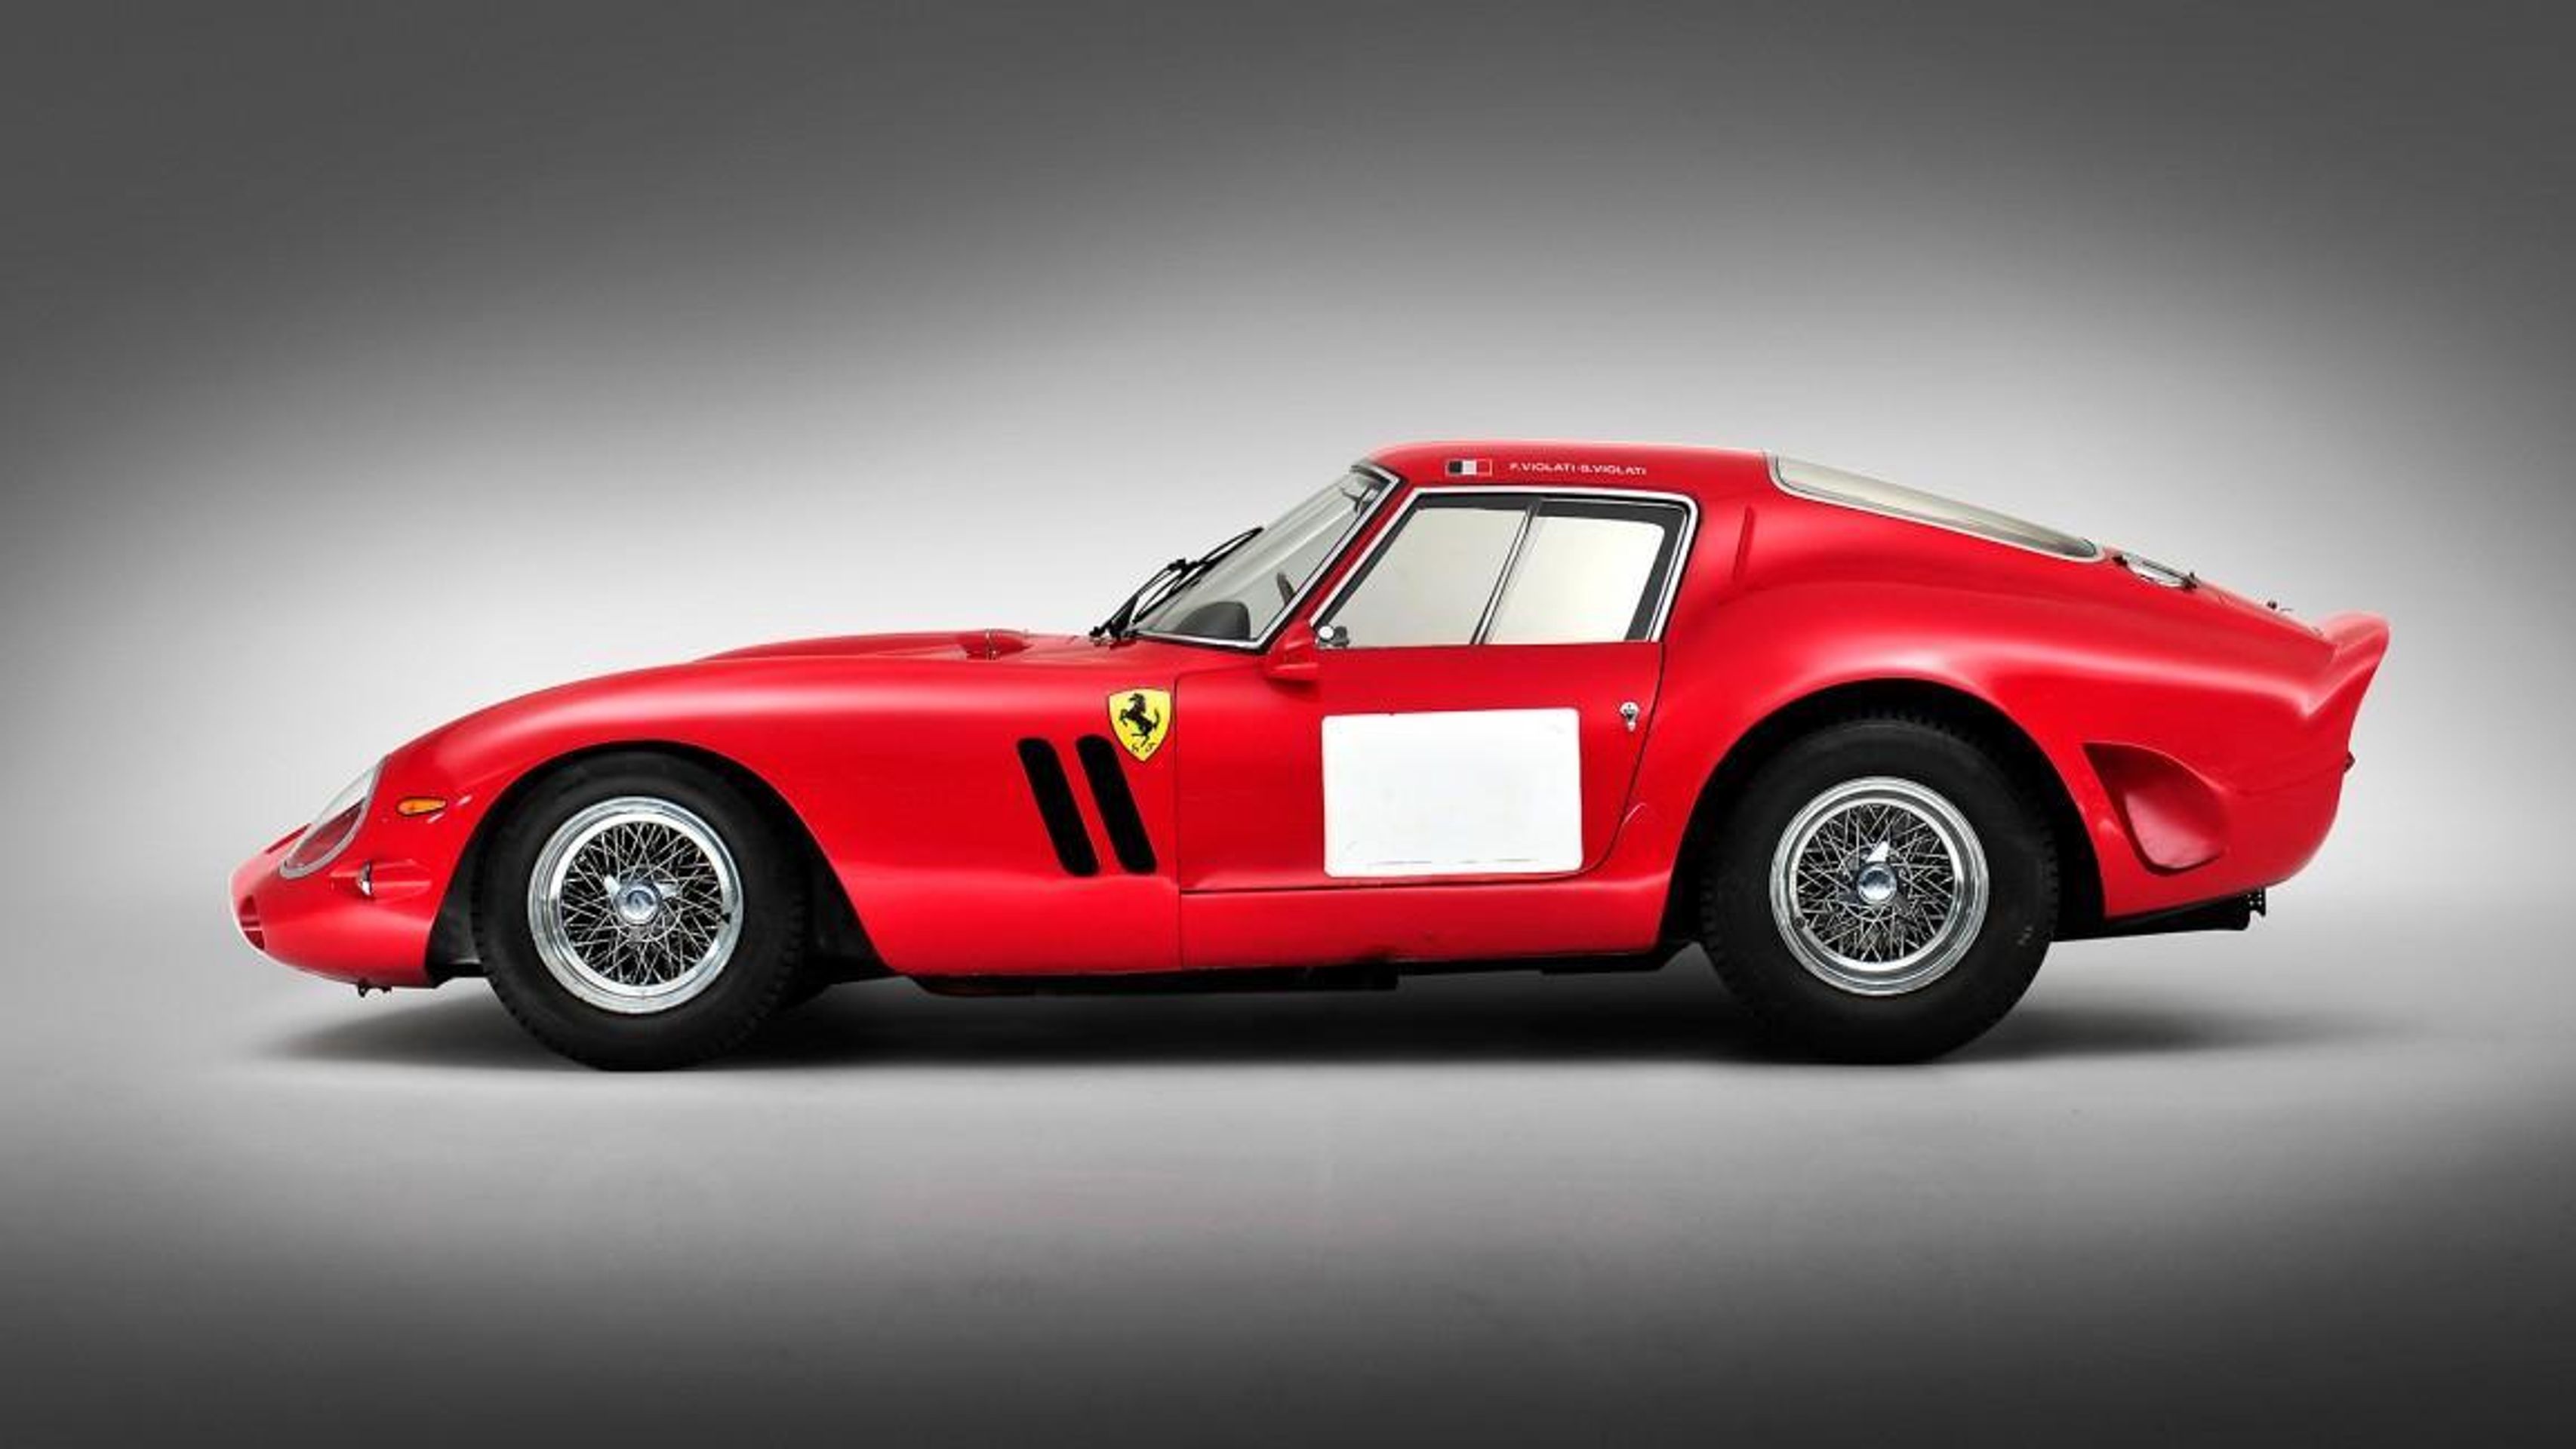 Ferrari 250 GTO z roku 1962 - 11 nejdražších aut historie (9/11)